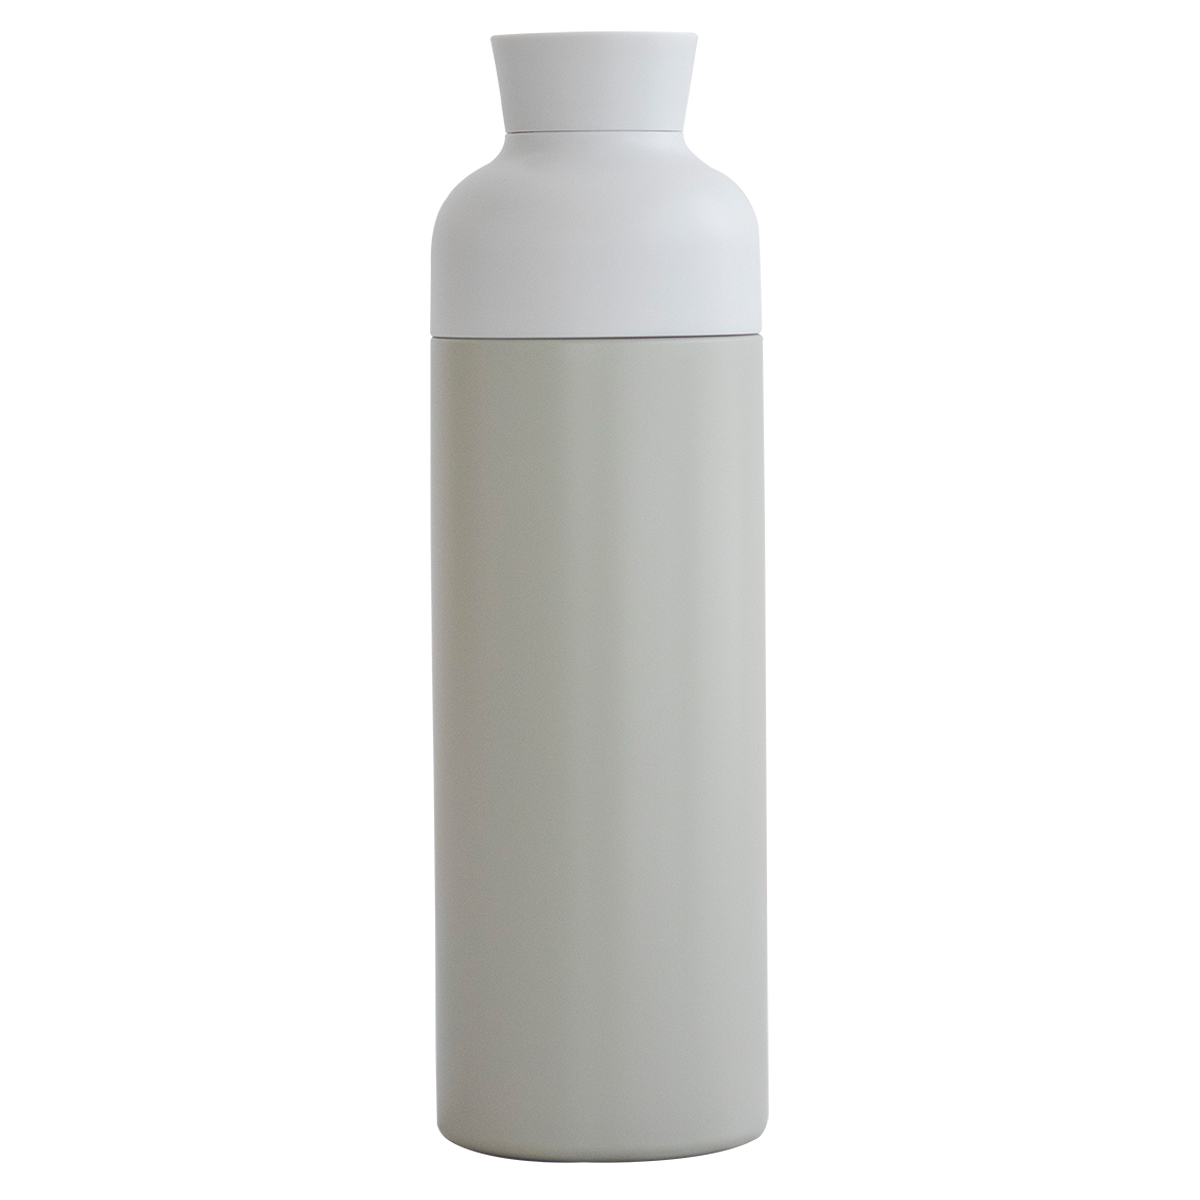 マグボトル 小さい 水筒 キープ KEEP エニタイムボトル ANYTIME BOTTLE 330ml 洗いやすい ステンレス かわいい